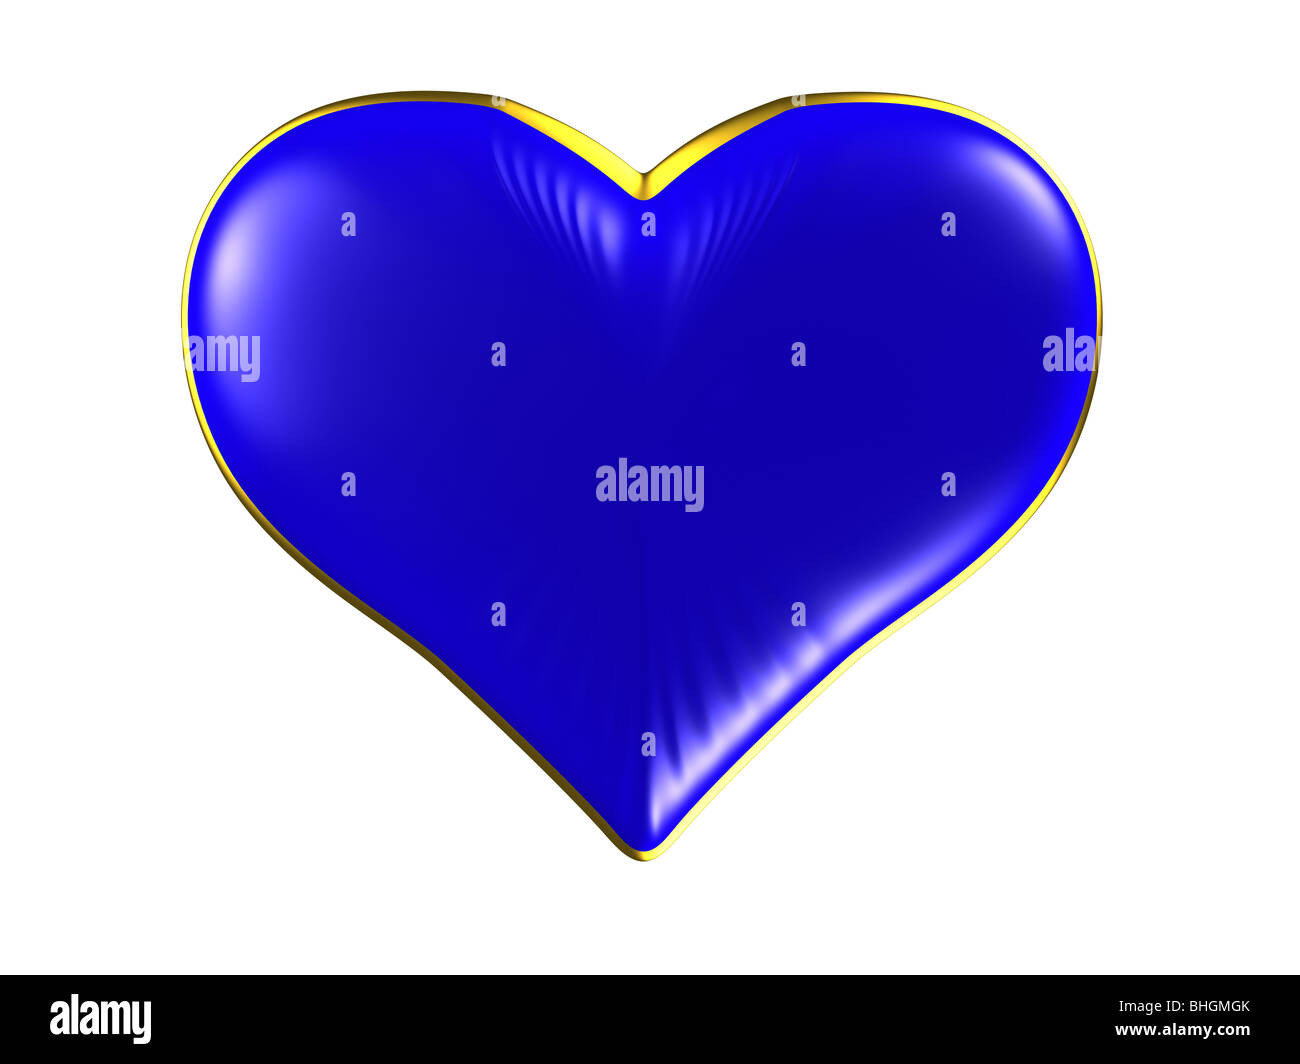 Isolierte blaues Herz mit Goldrand auf weißem Hintergrund. Bitte sehen Sie einige ähnliche Bilder aus meinem portfolio Stockfoto